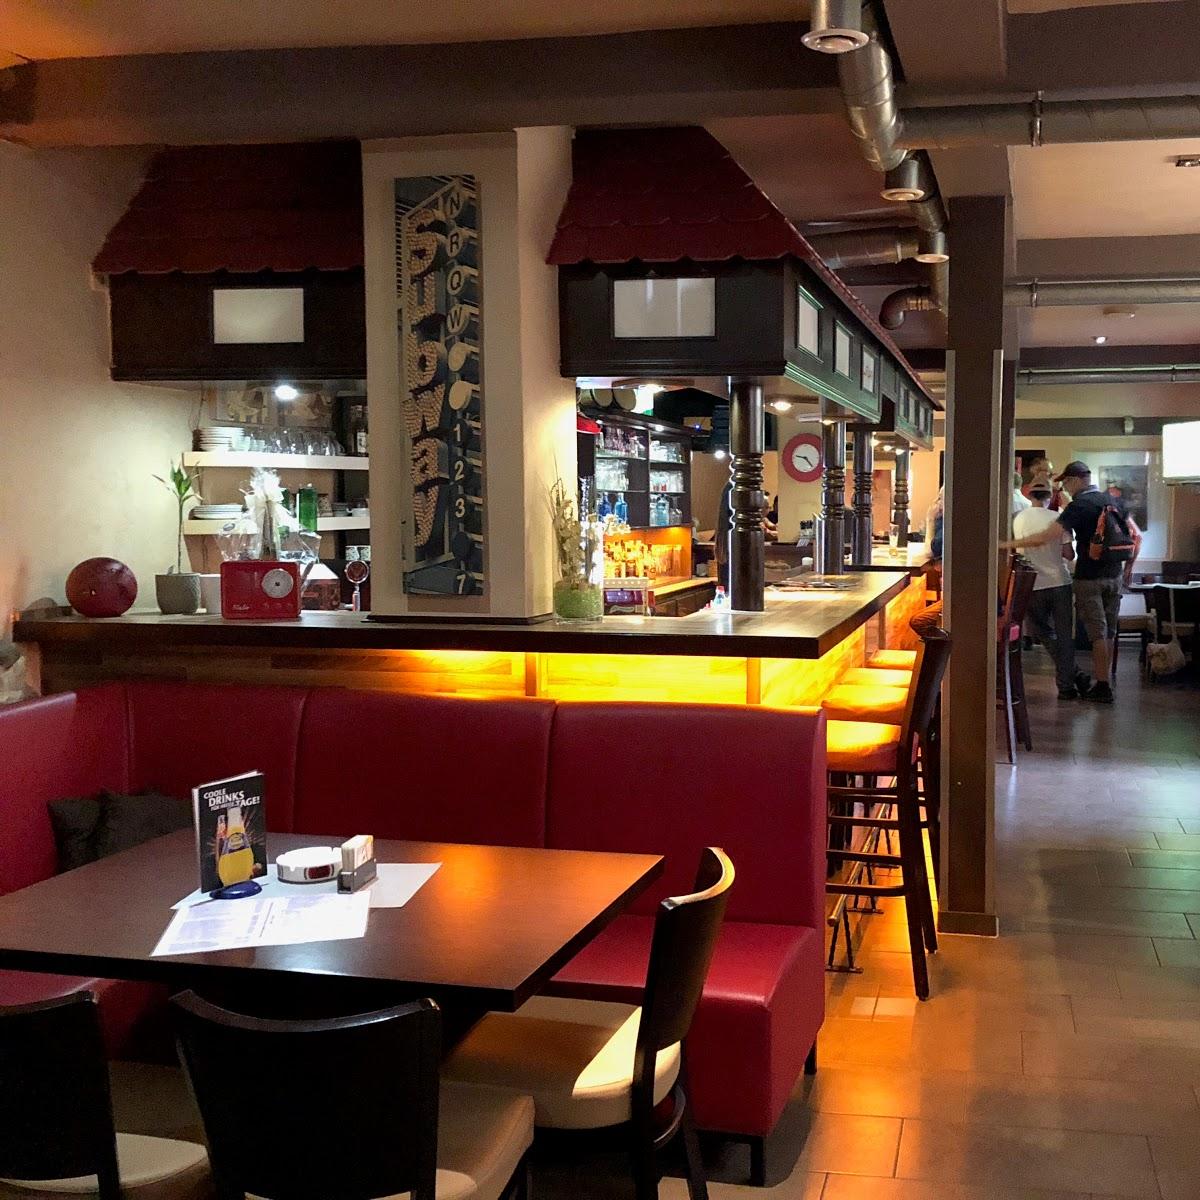 Restaurant "Pizzeria Flair" in Borken